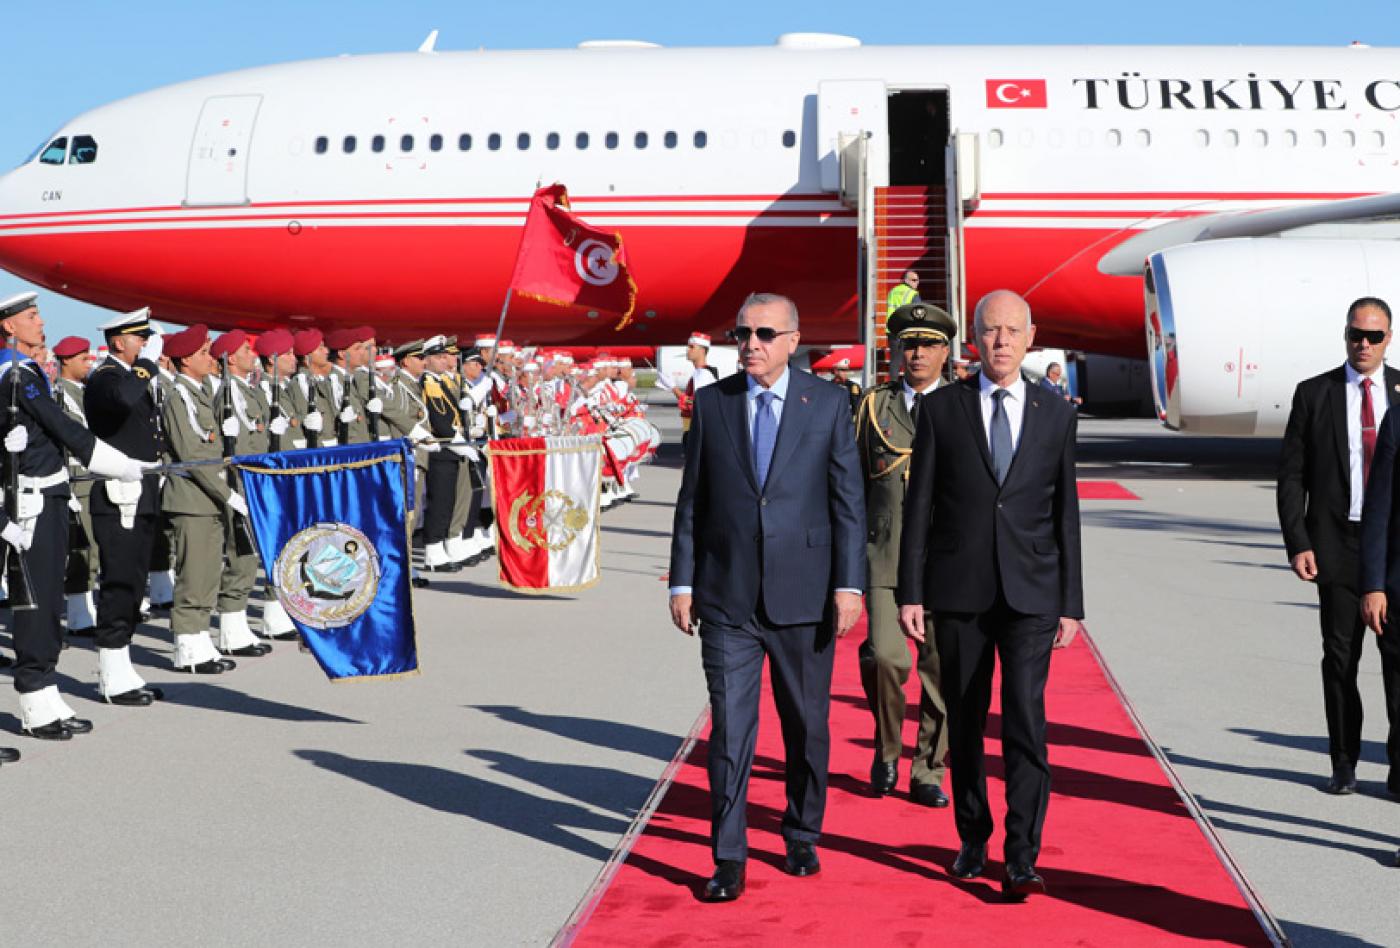 Η Τύνιδα συντάσσεται με την Άγκυρα: «Η συμφωνία Τουρκίας-Λιβύης καθορίζει τα όρια των θαλάσσιων ζωνών τους»!